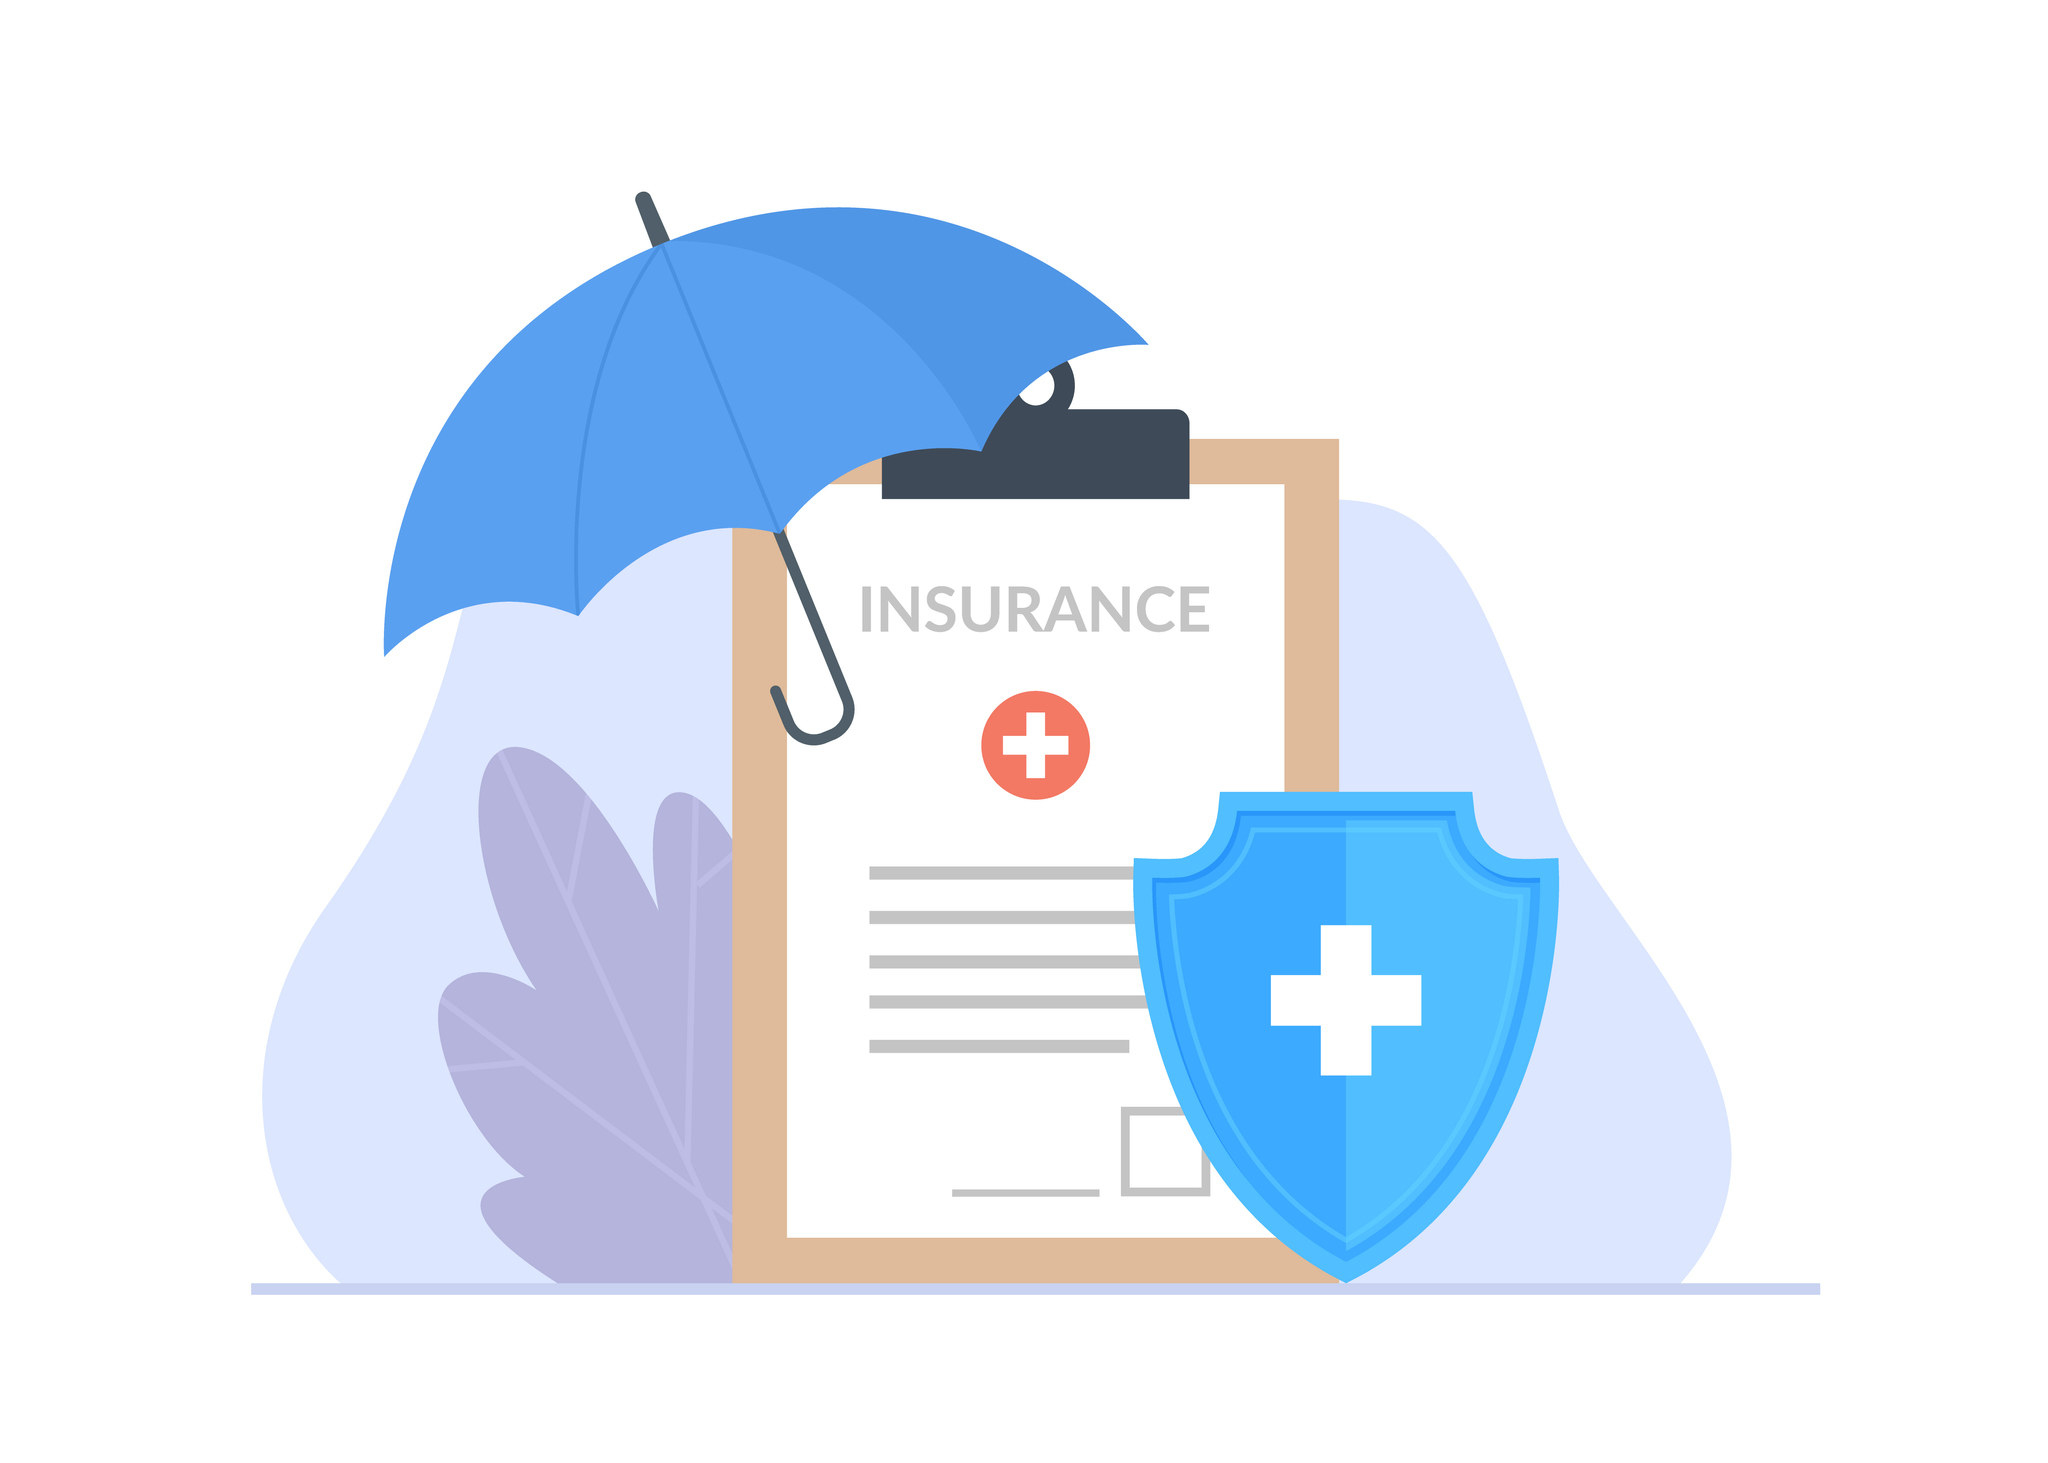 An insurance logo and an open umbrella